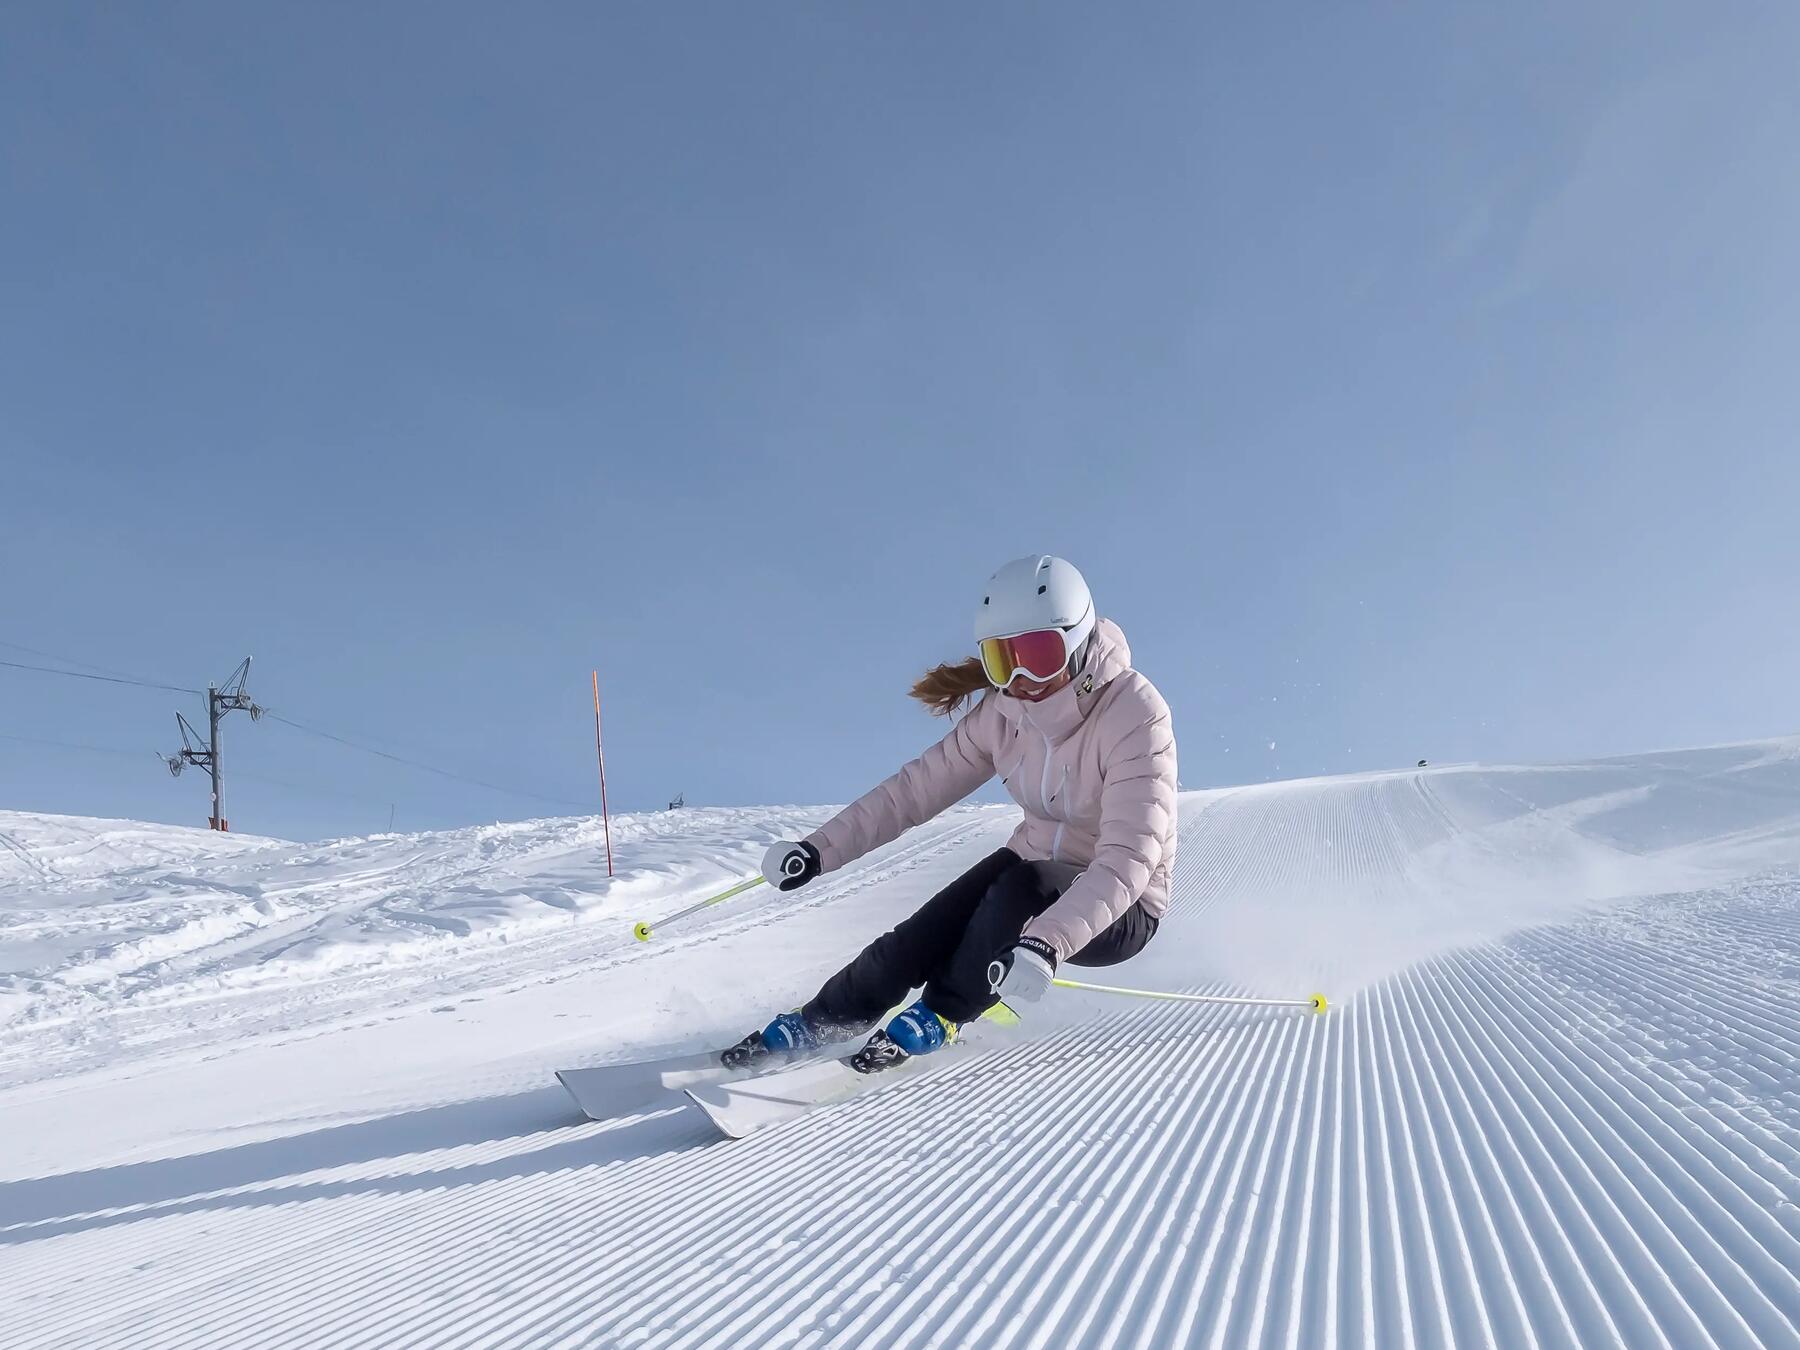 Comment carver en ski : Conseils pour réussir ses virages coupés